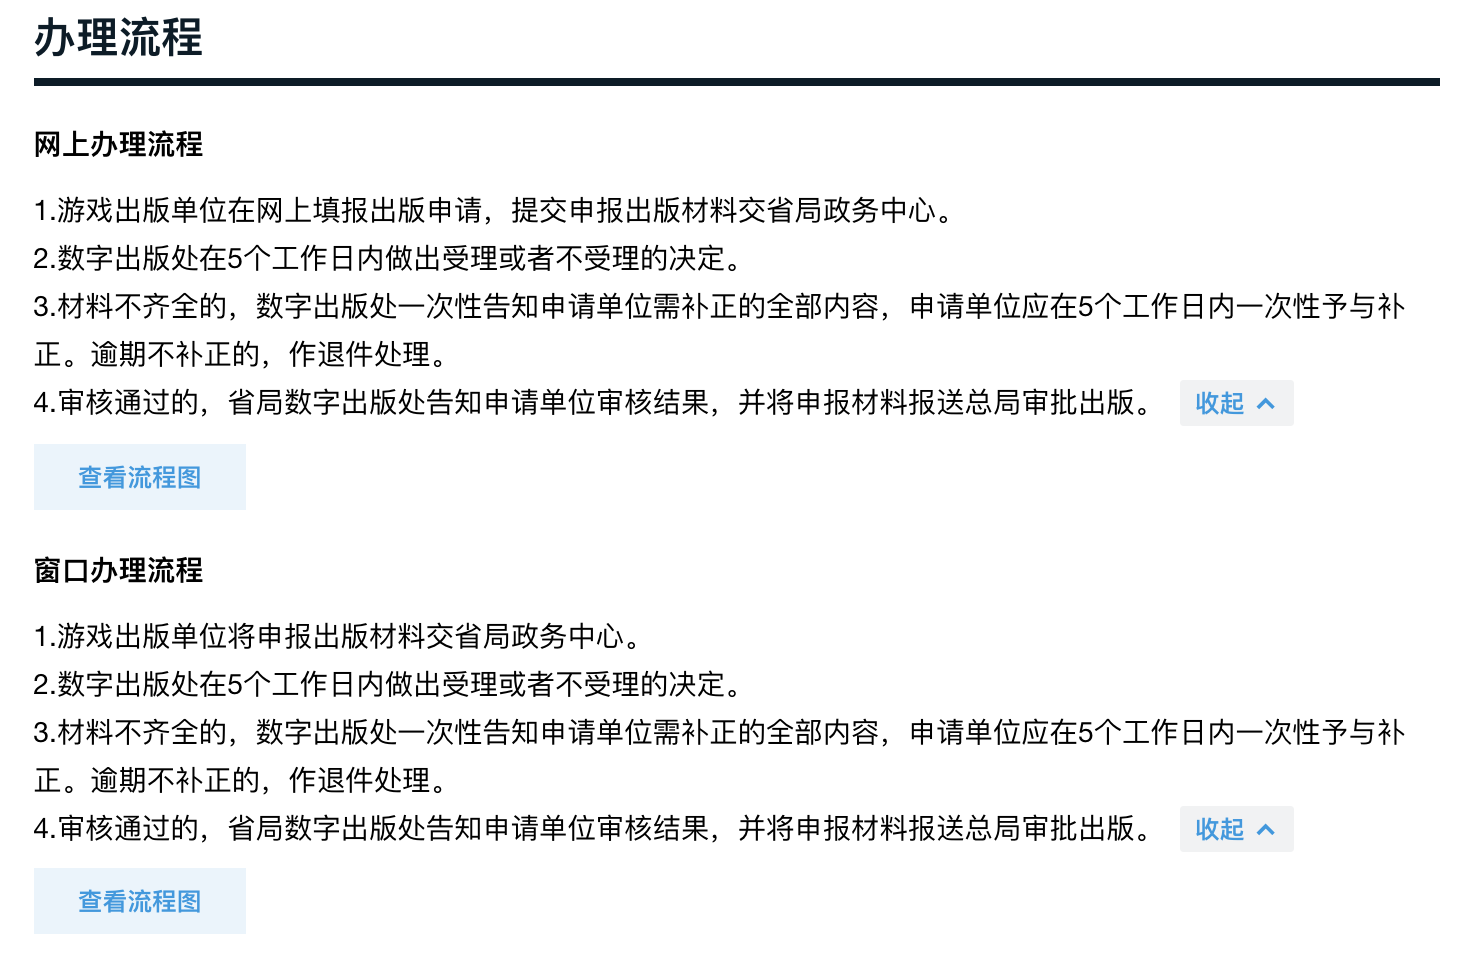 广东政务服务网披露的出版国产网络游戏作品审核流程